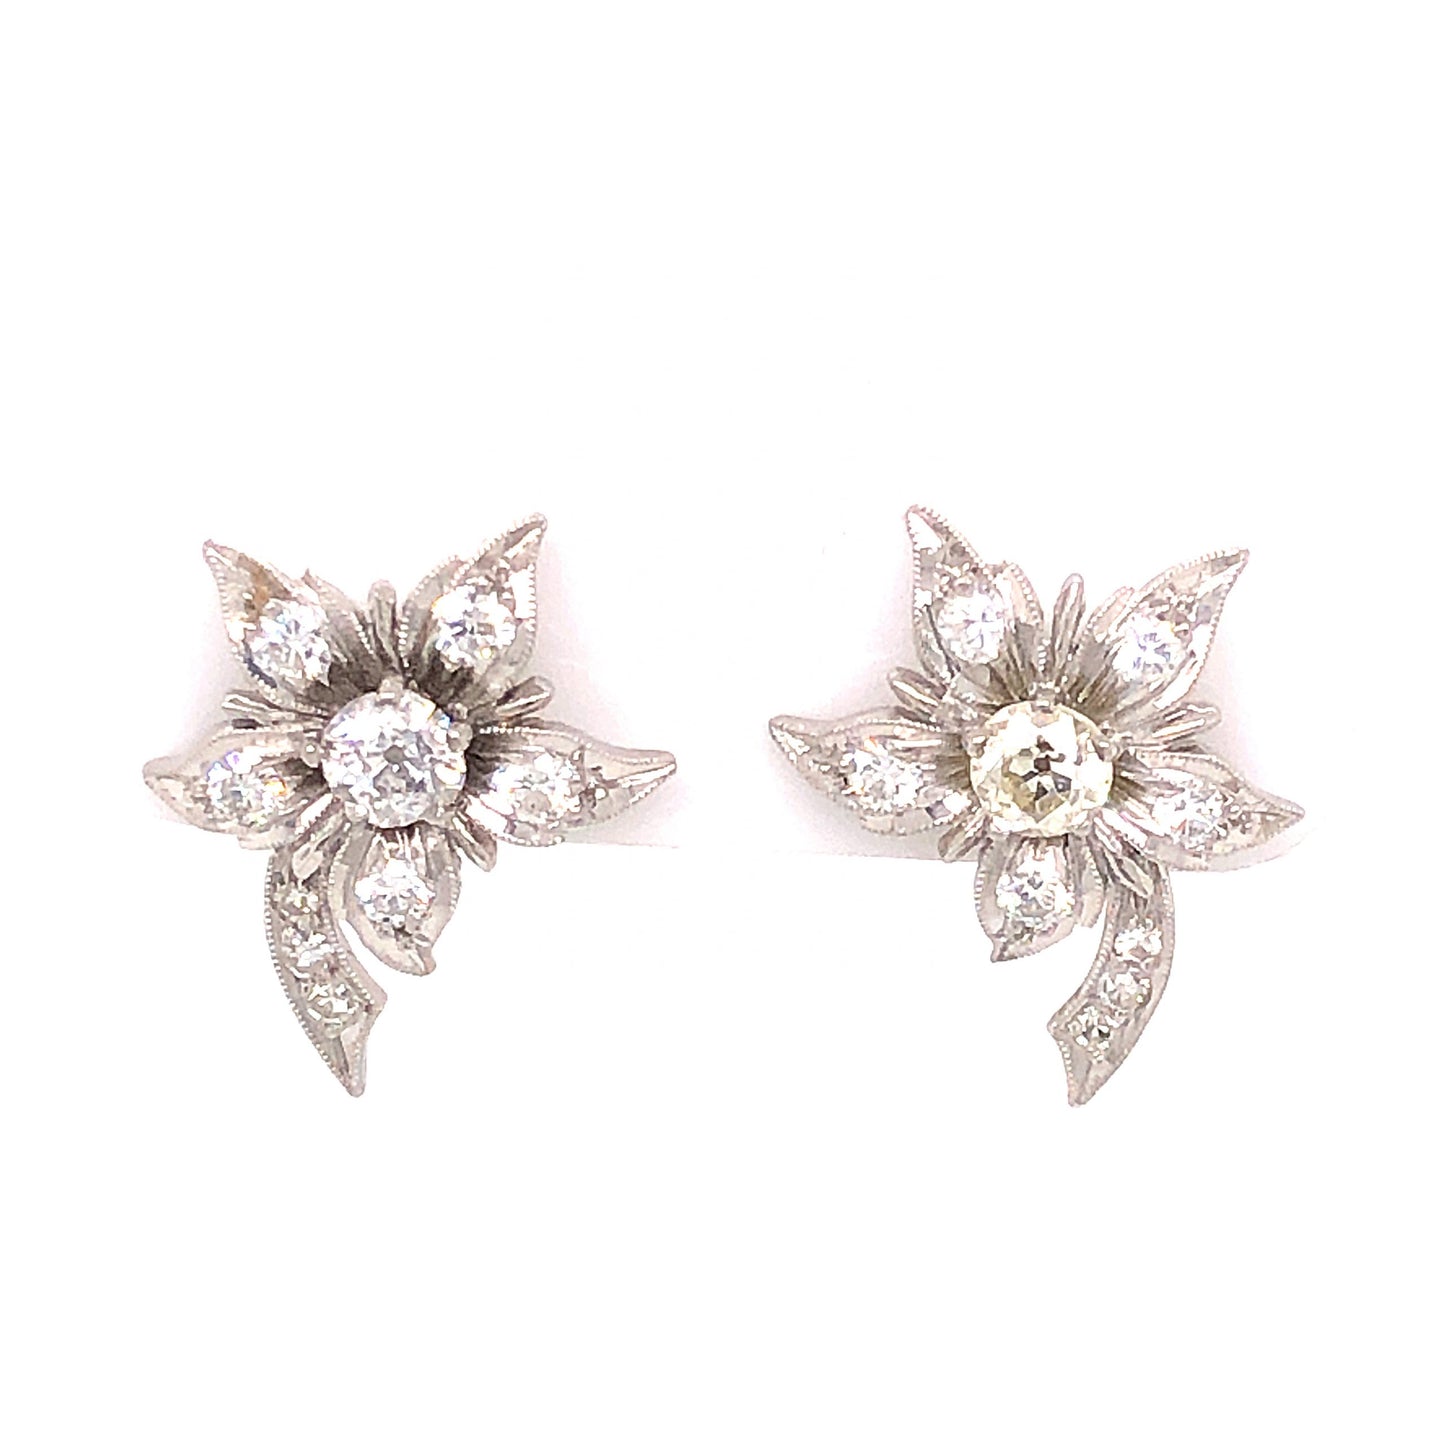 Edward Petri Art Deco Diamond Earrings in Platinum